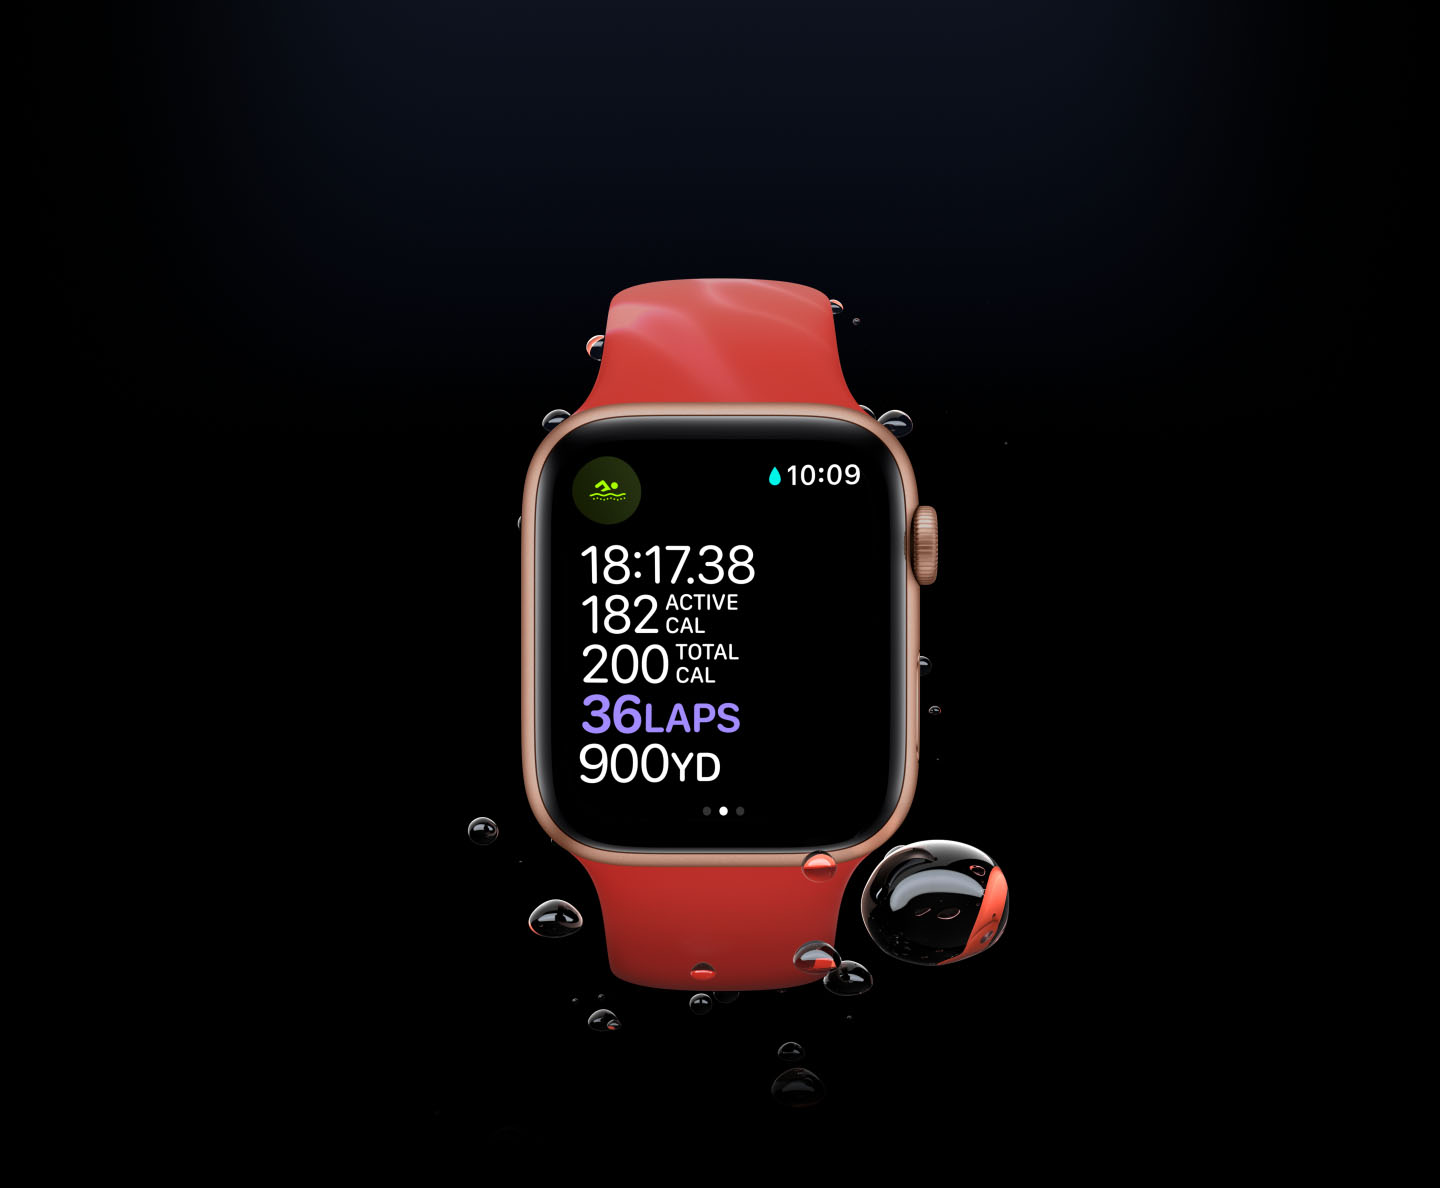 Đồng hồ thông minh Apple Watch Series 6 40mm (4G) Viền Nhôm Bạc- Dây Cao Su Trắng